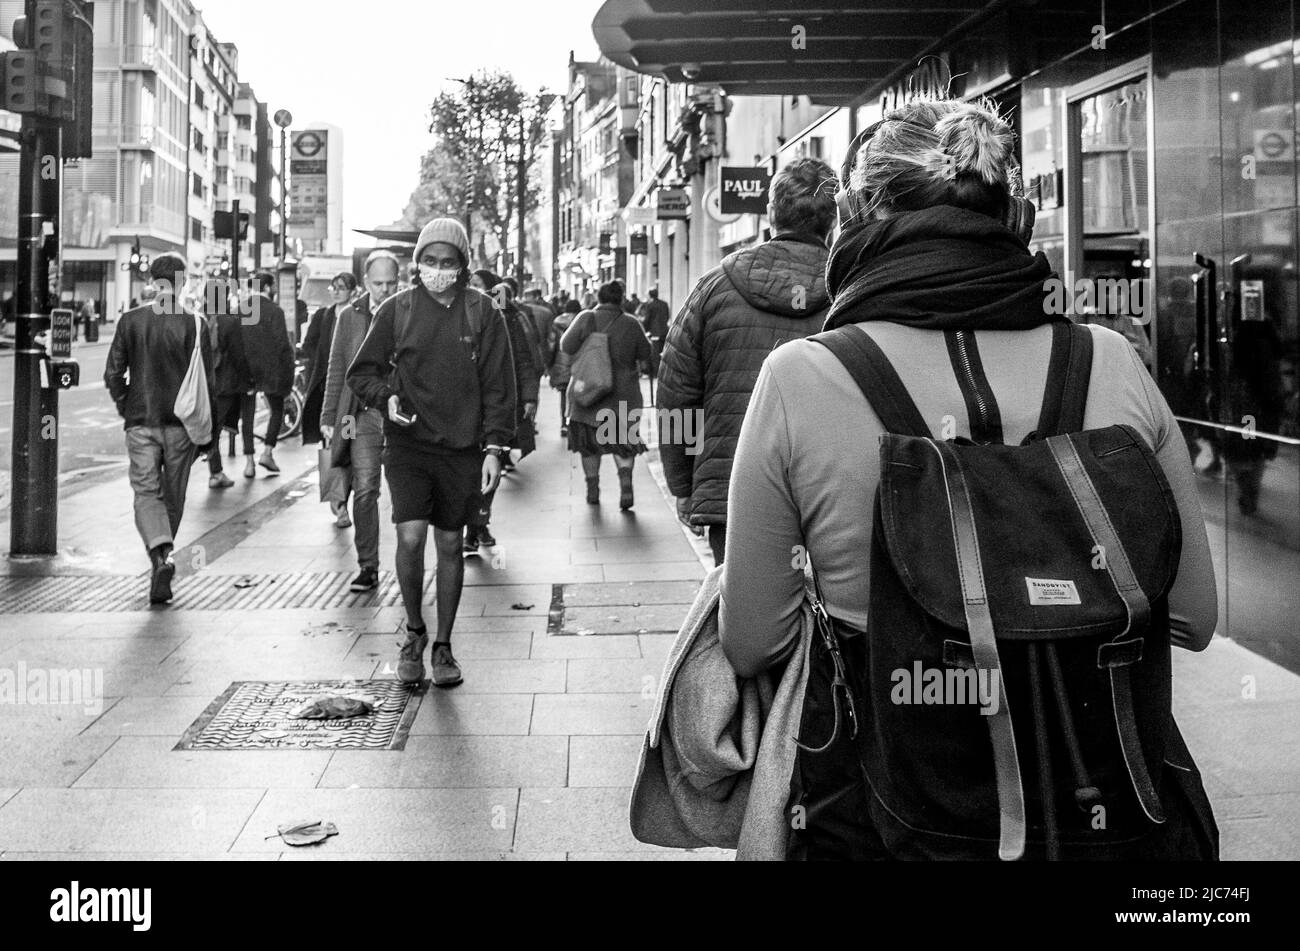 Les personnes se promenant le long de Tottenham court Road à Londres pendant l'heure de pointe du matin - Photographie de rue noir et blanc. Banque D'Images